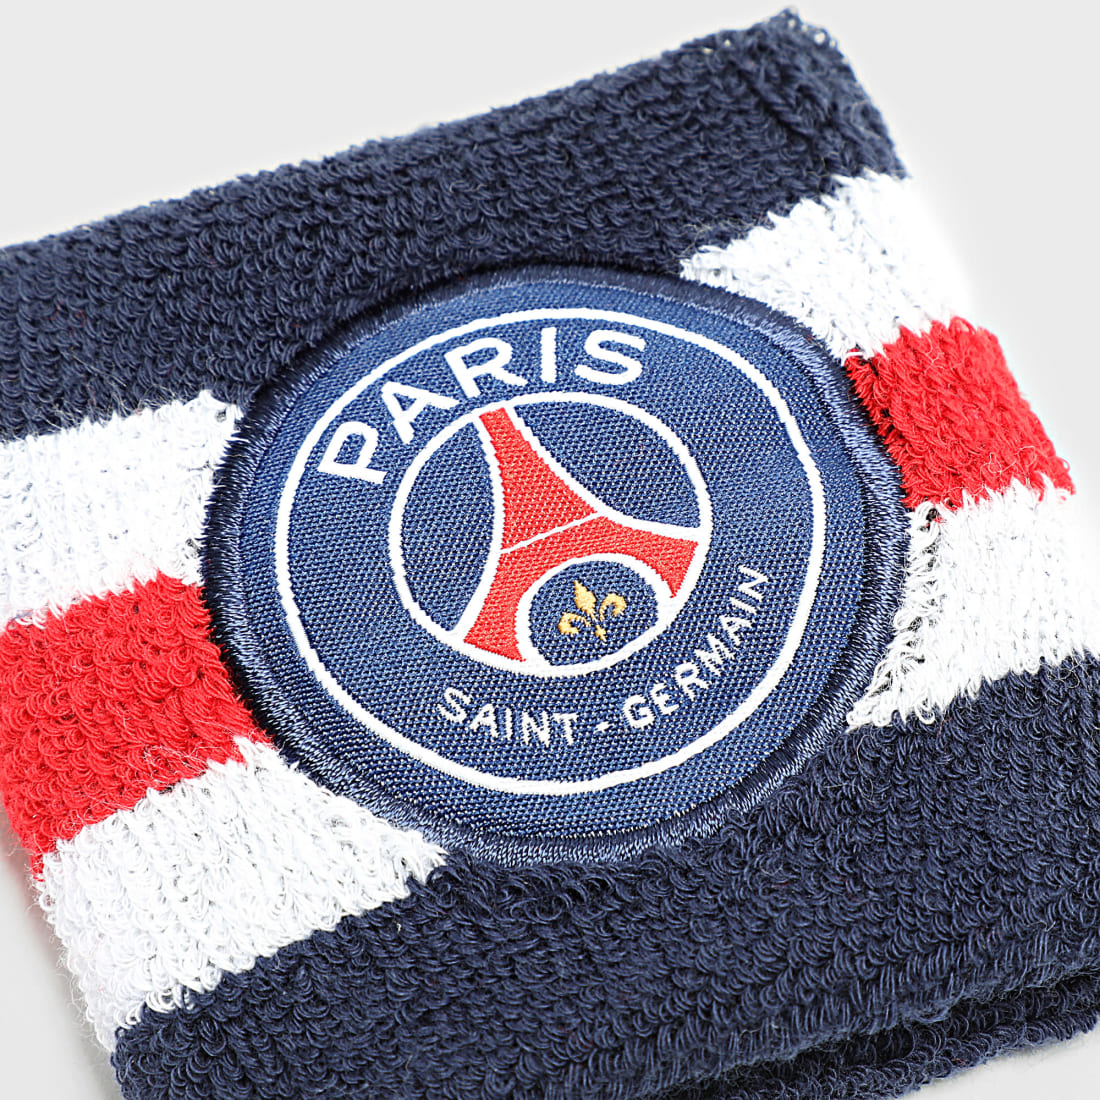 Bonnet pompon PSG enfant - Collection officielle PARIS SAINT GERMAIN PSG